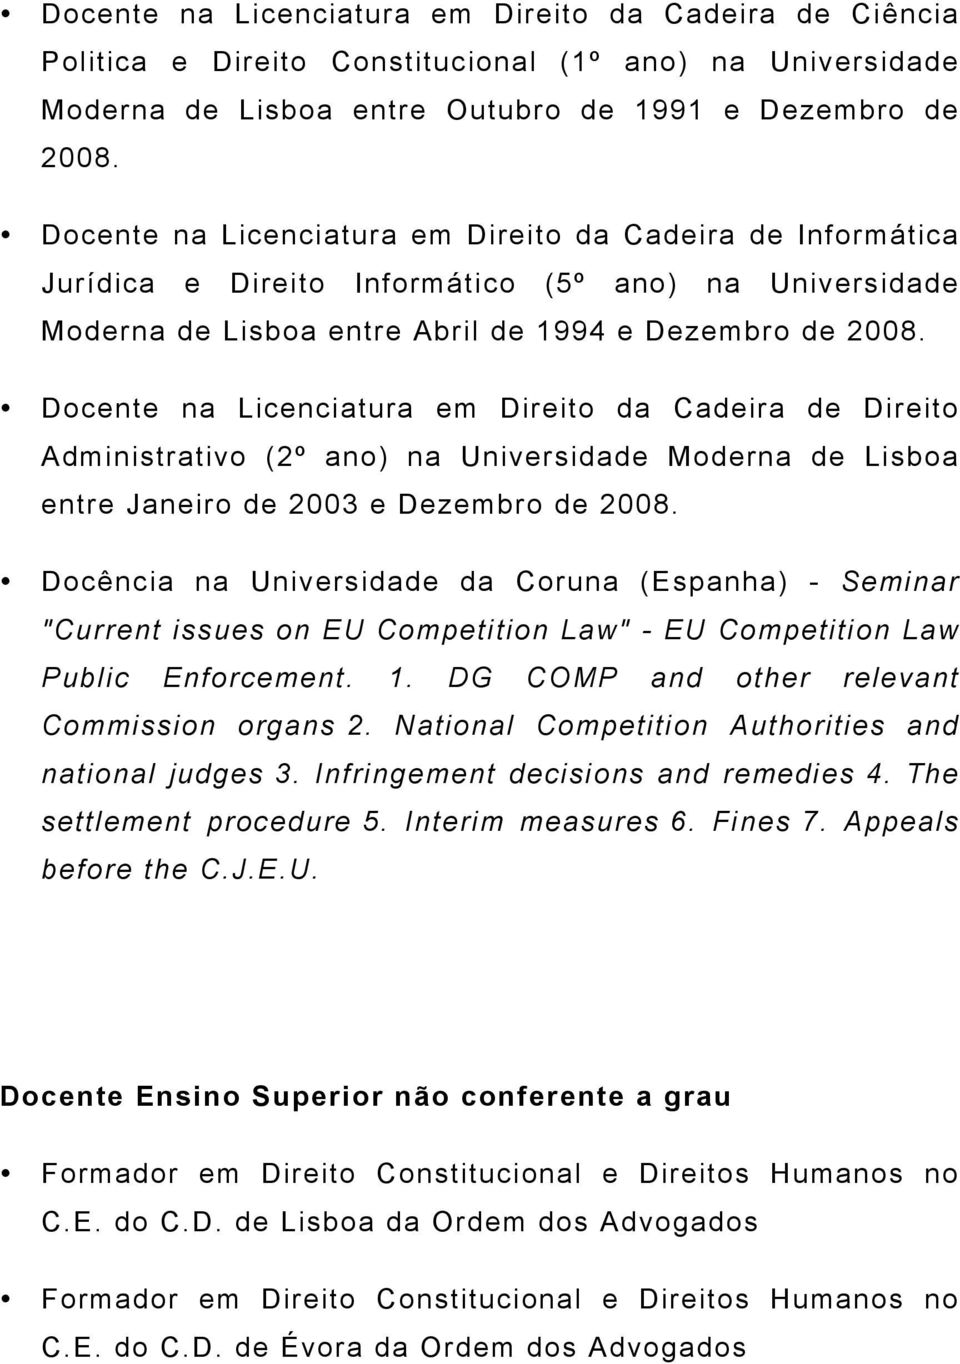 Docente na Licenciatura em Direito da Cadeira de Direito Administrativo (2º ano) na Universidade Moderna de Lisboa entre Janeiro de 2003 e Dezembro de 2008.